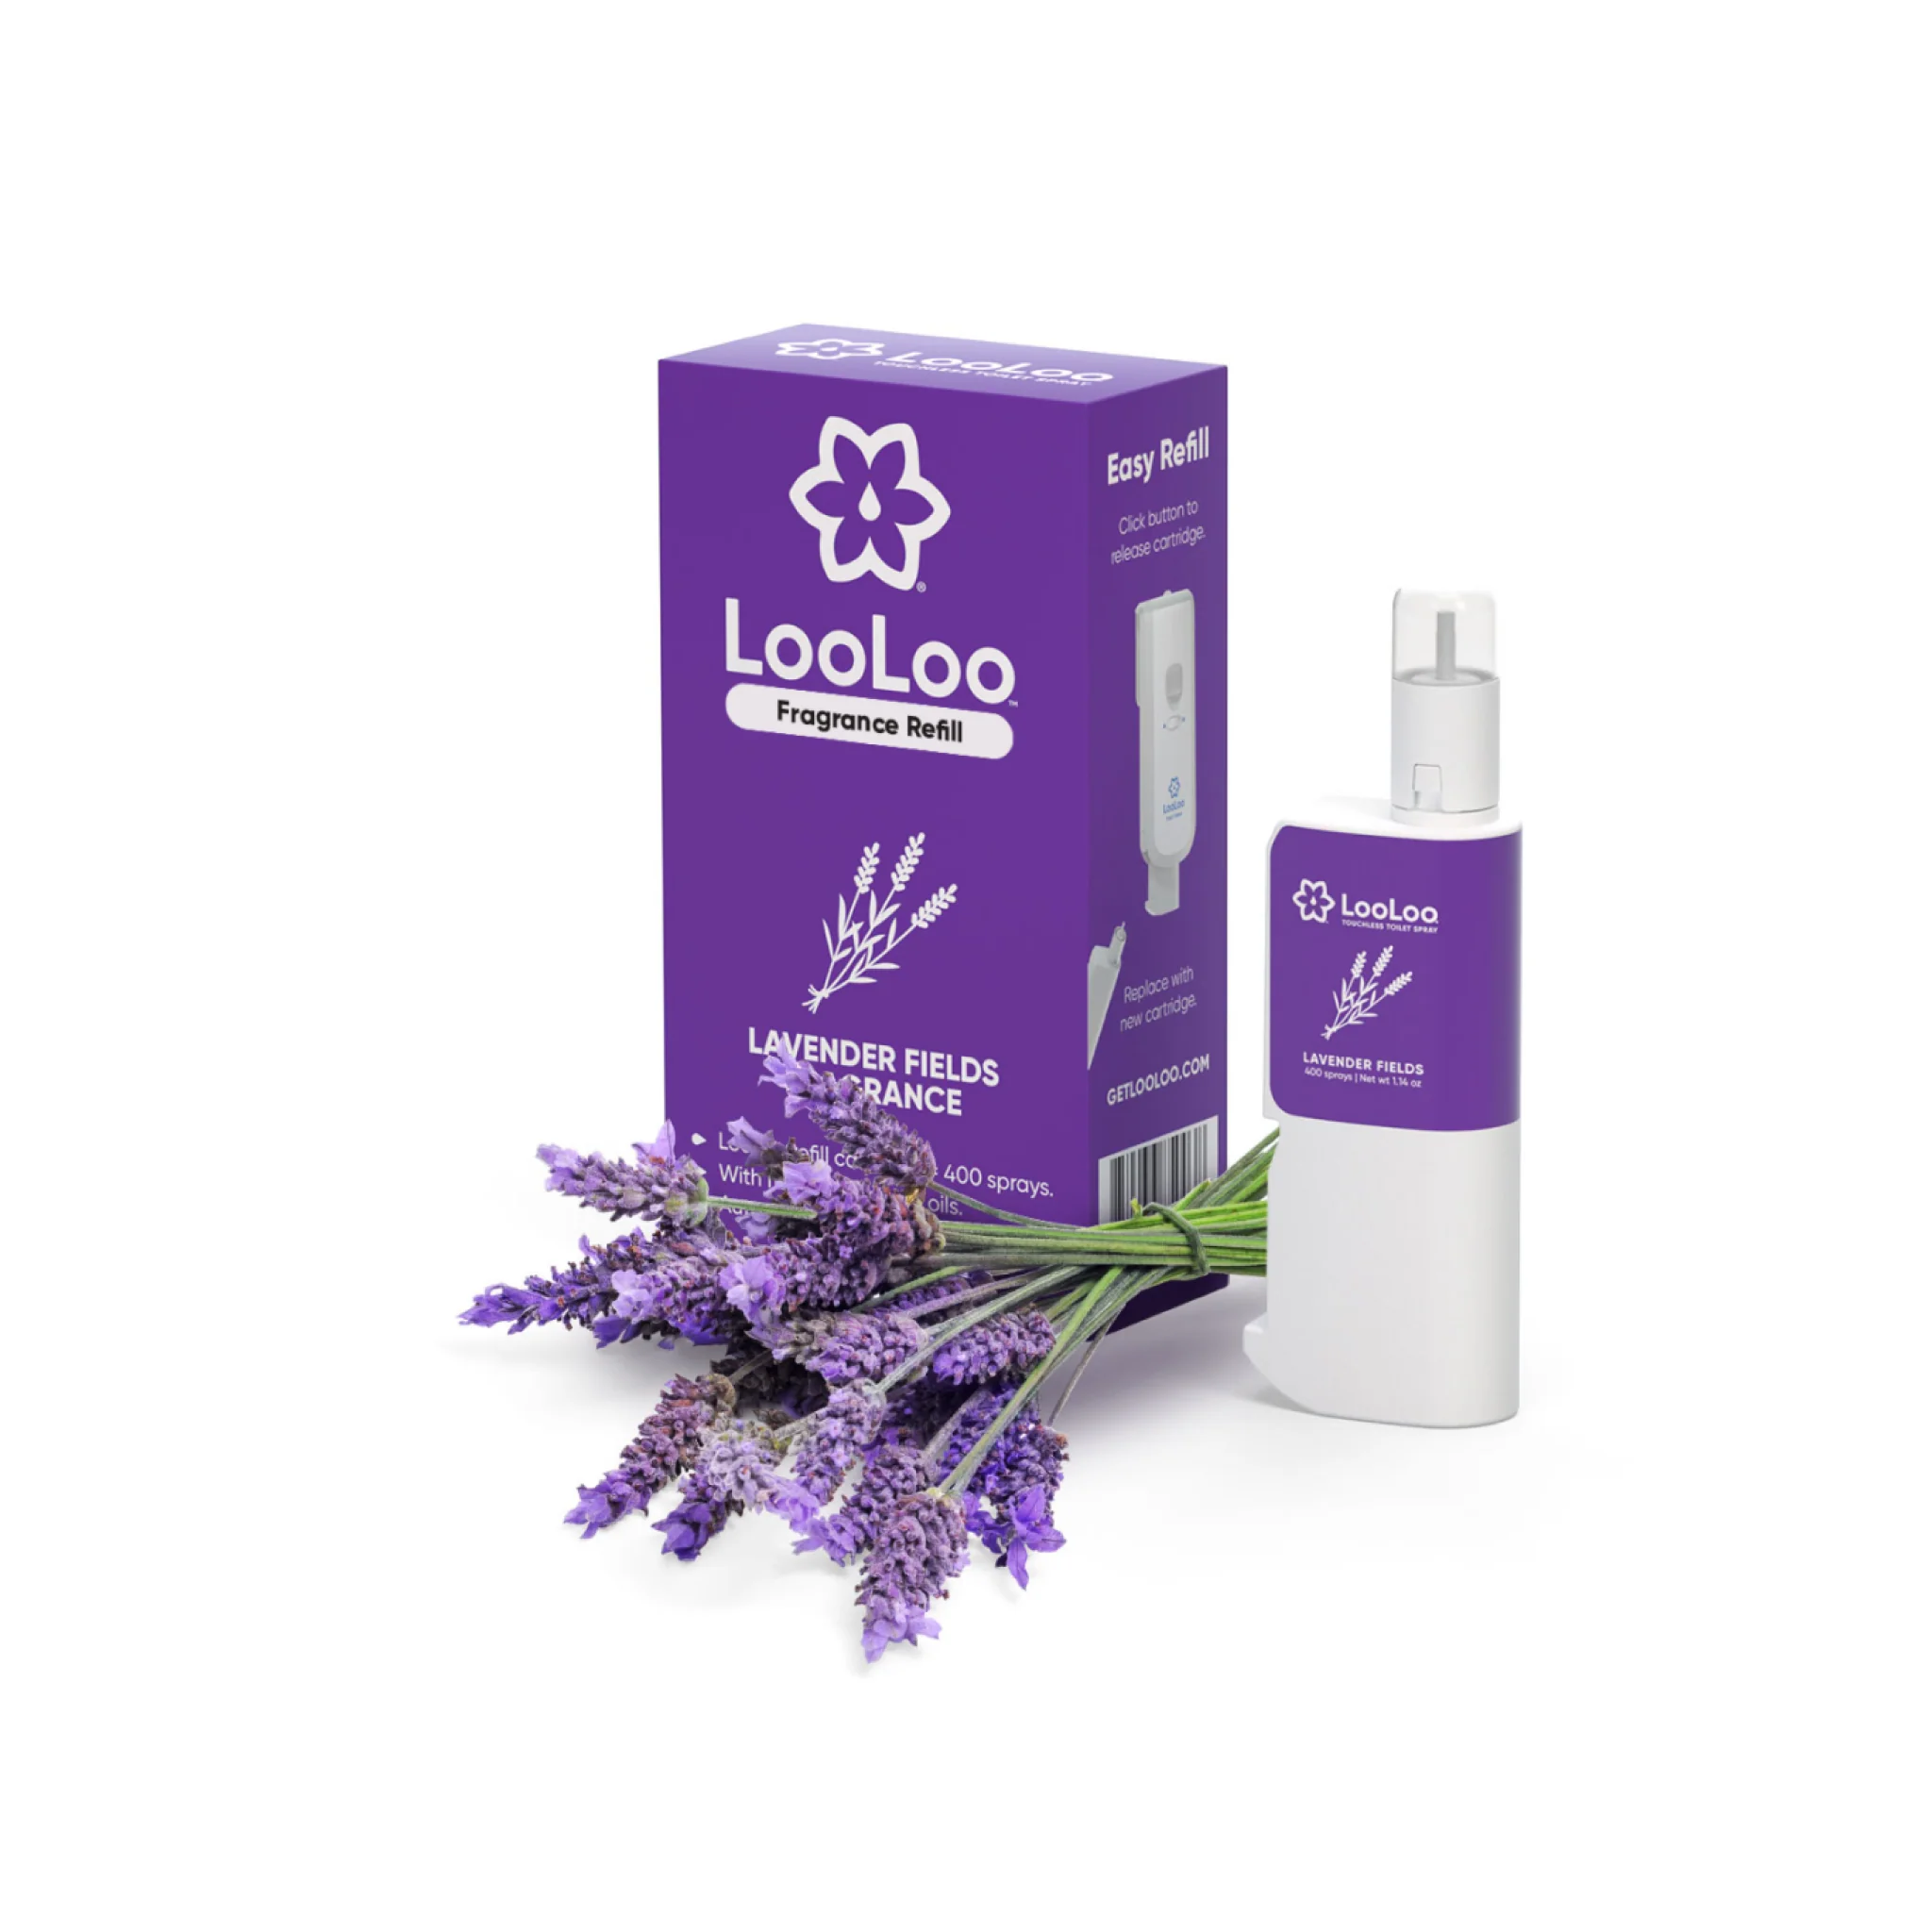 LooLoo Lavender